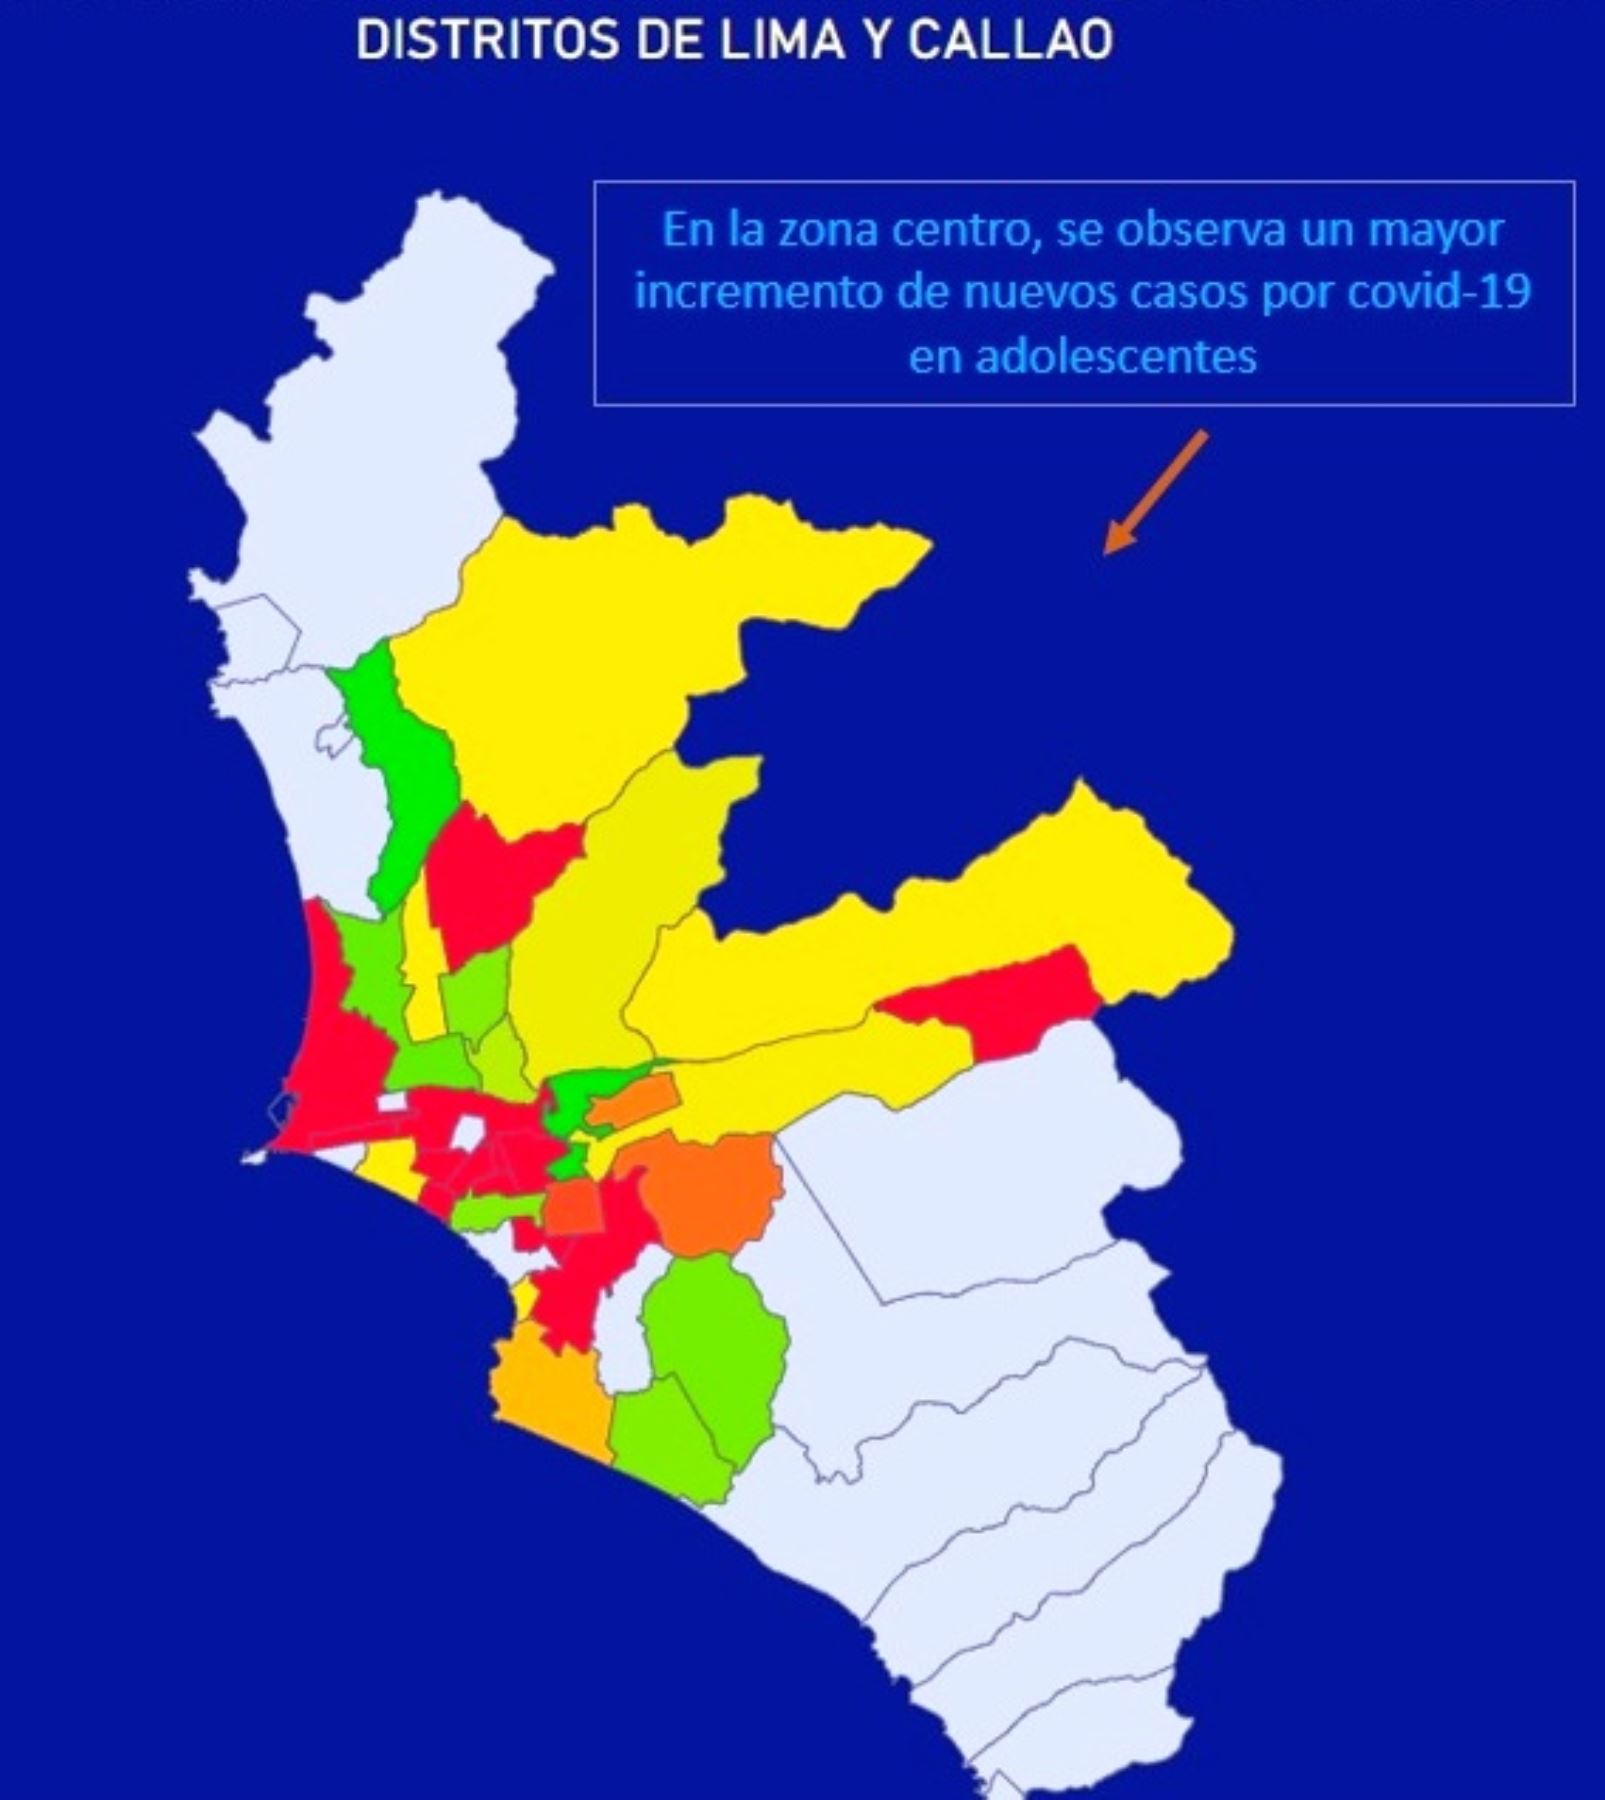 Covid 19 Conoce Los Distritos En Lima Y Callao Con Más Contagios